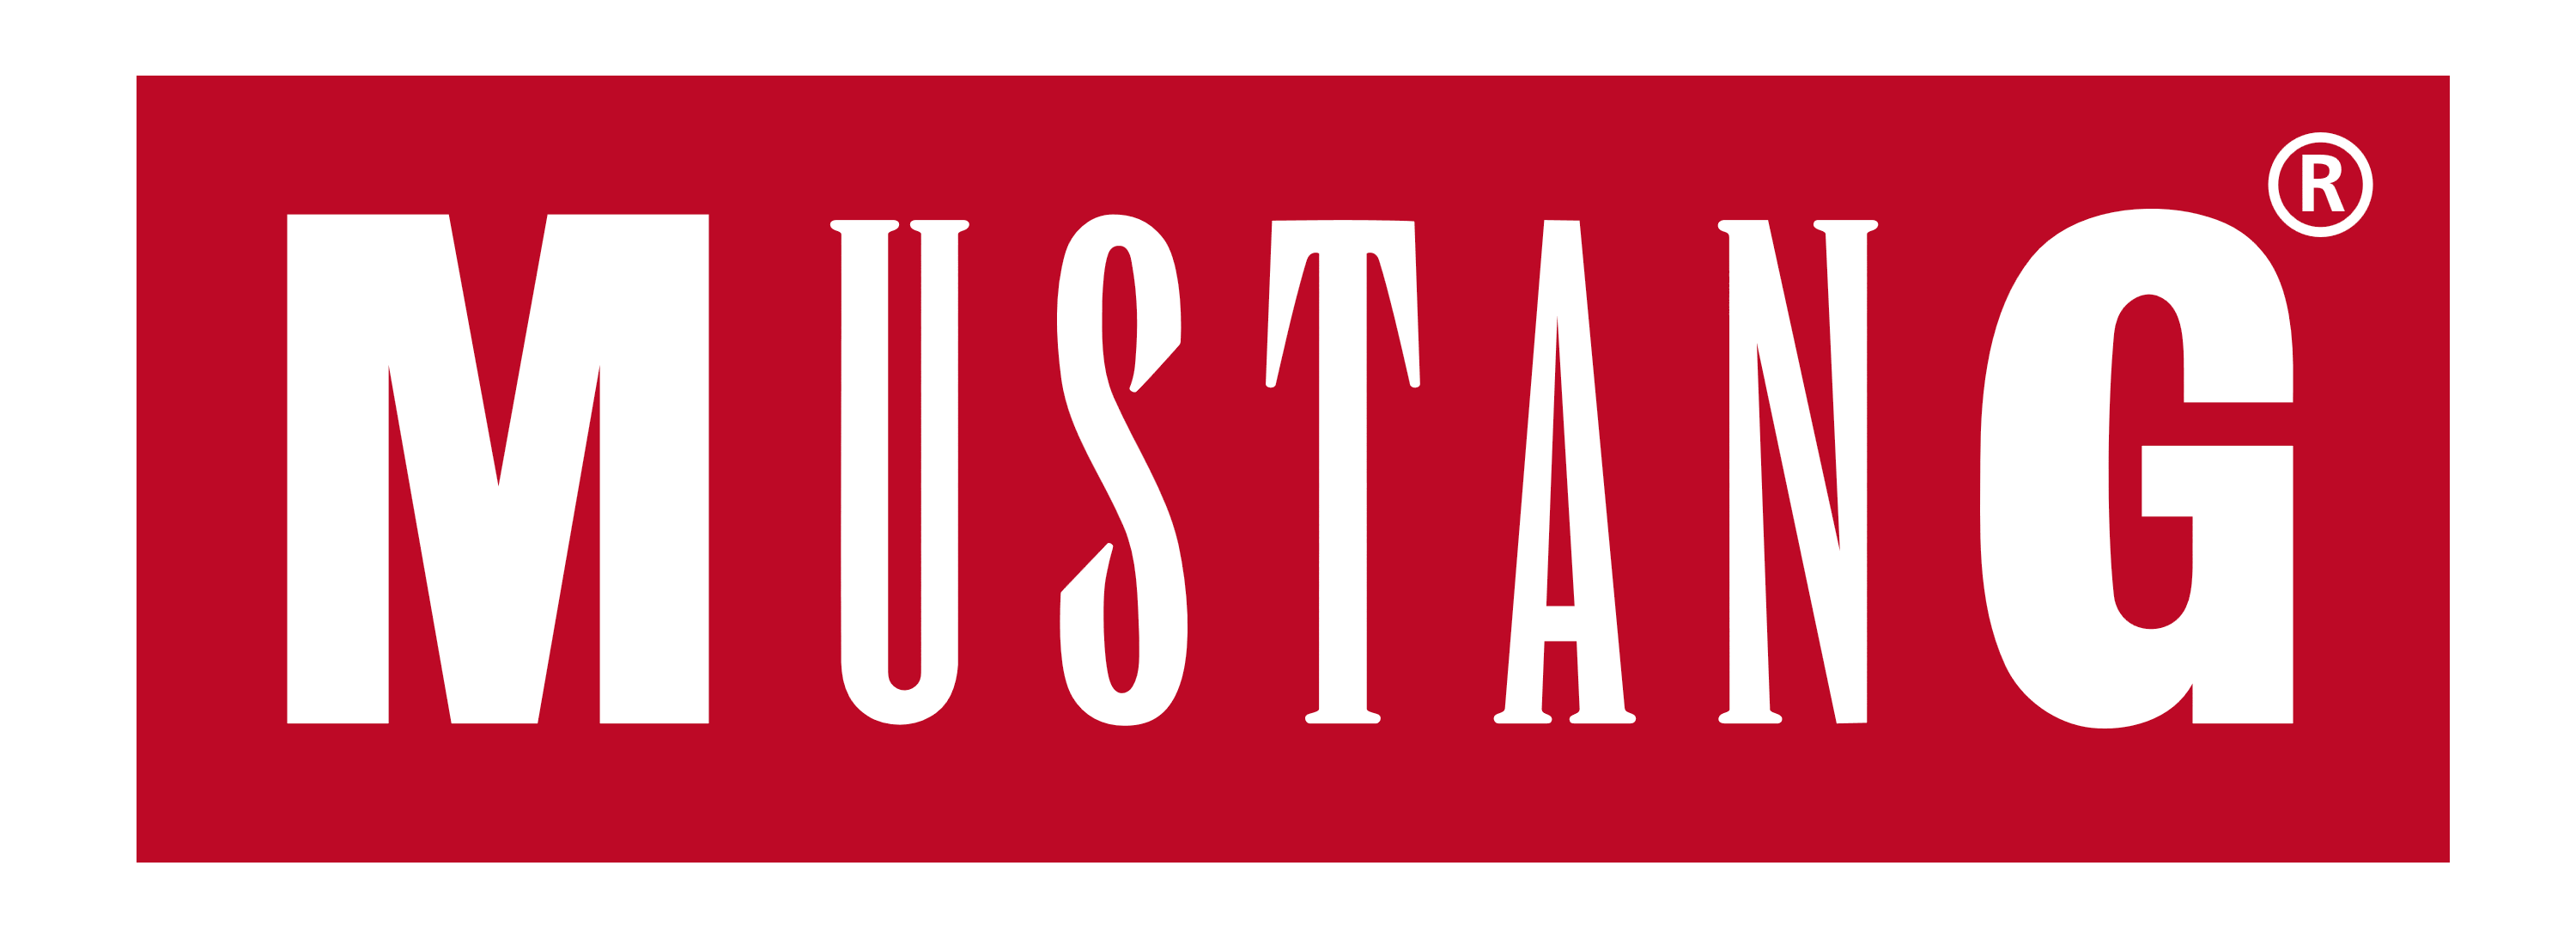 Mustang logo, logotype